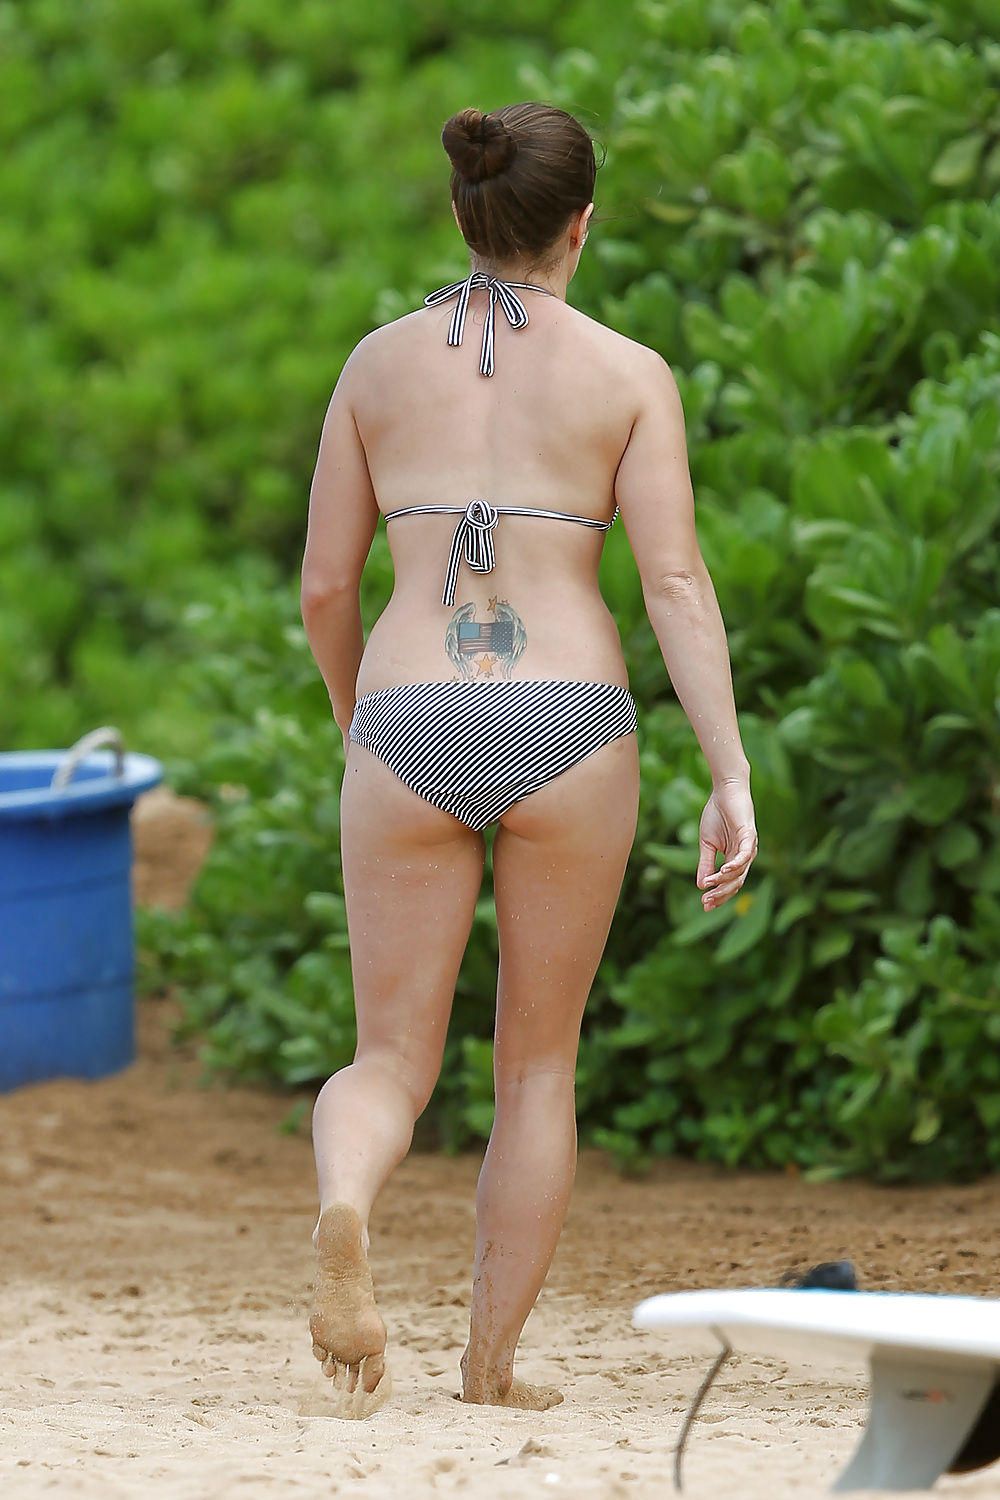 Danica patrick usando un bikini en una playa en hawaii
 #6481275